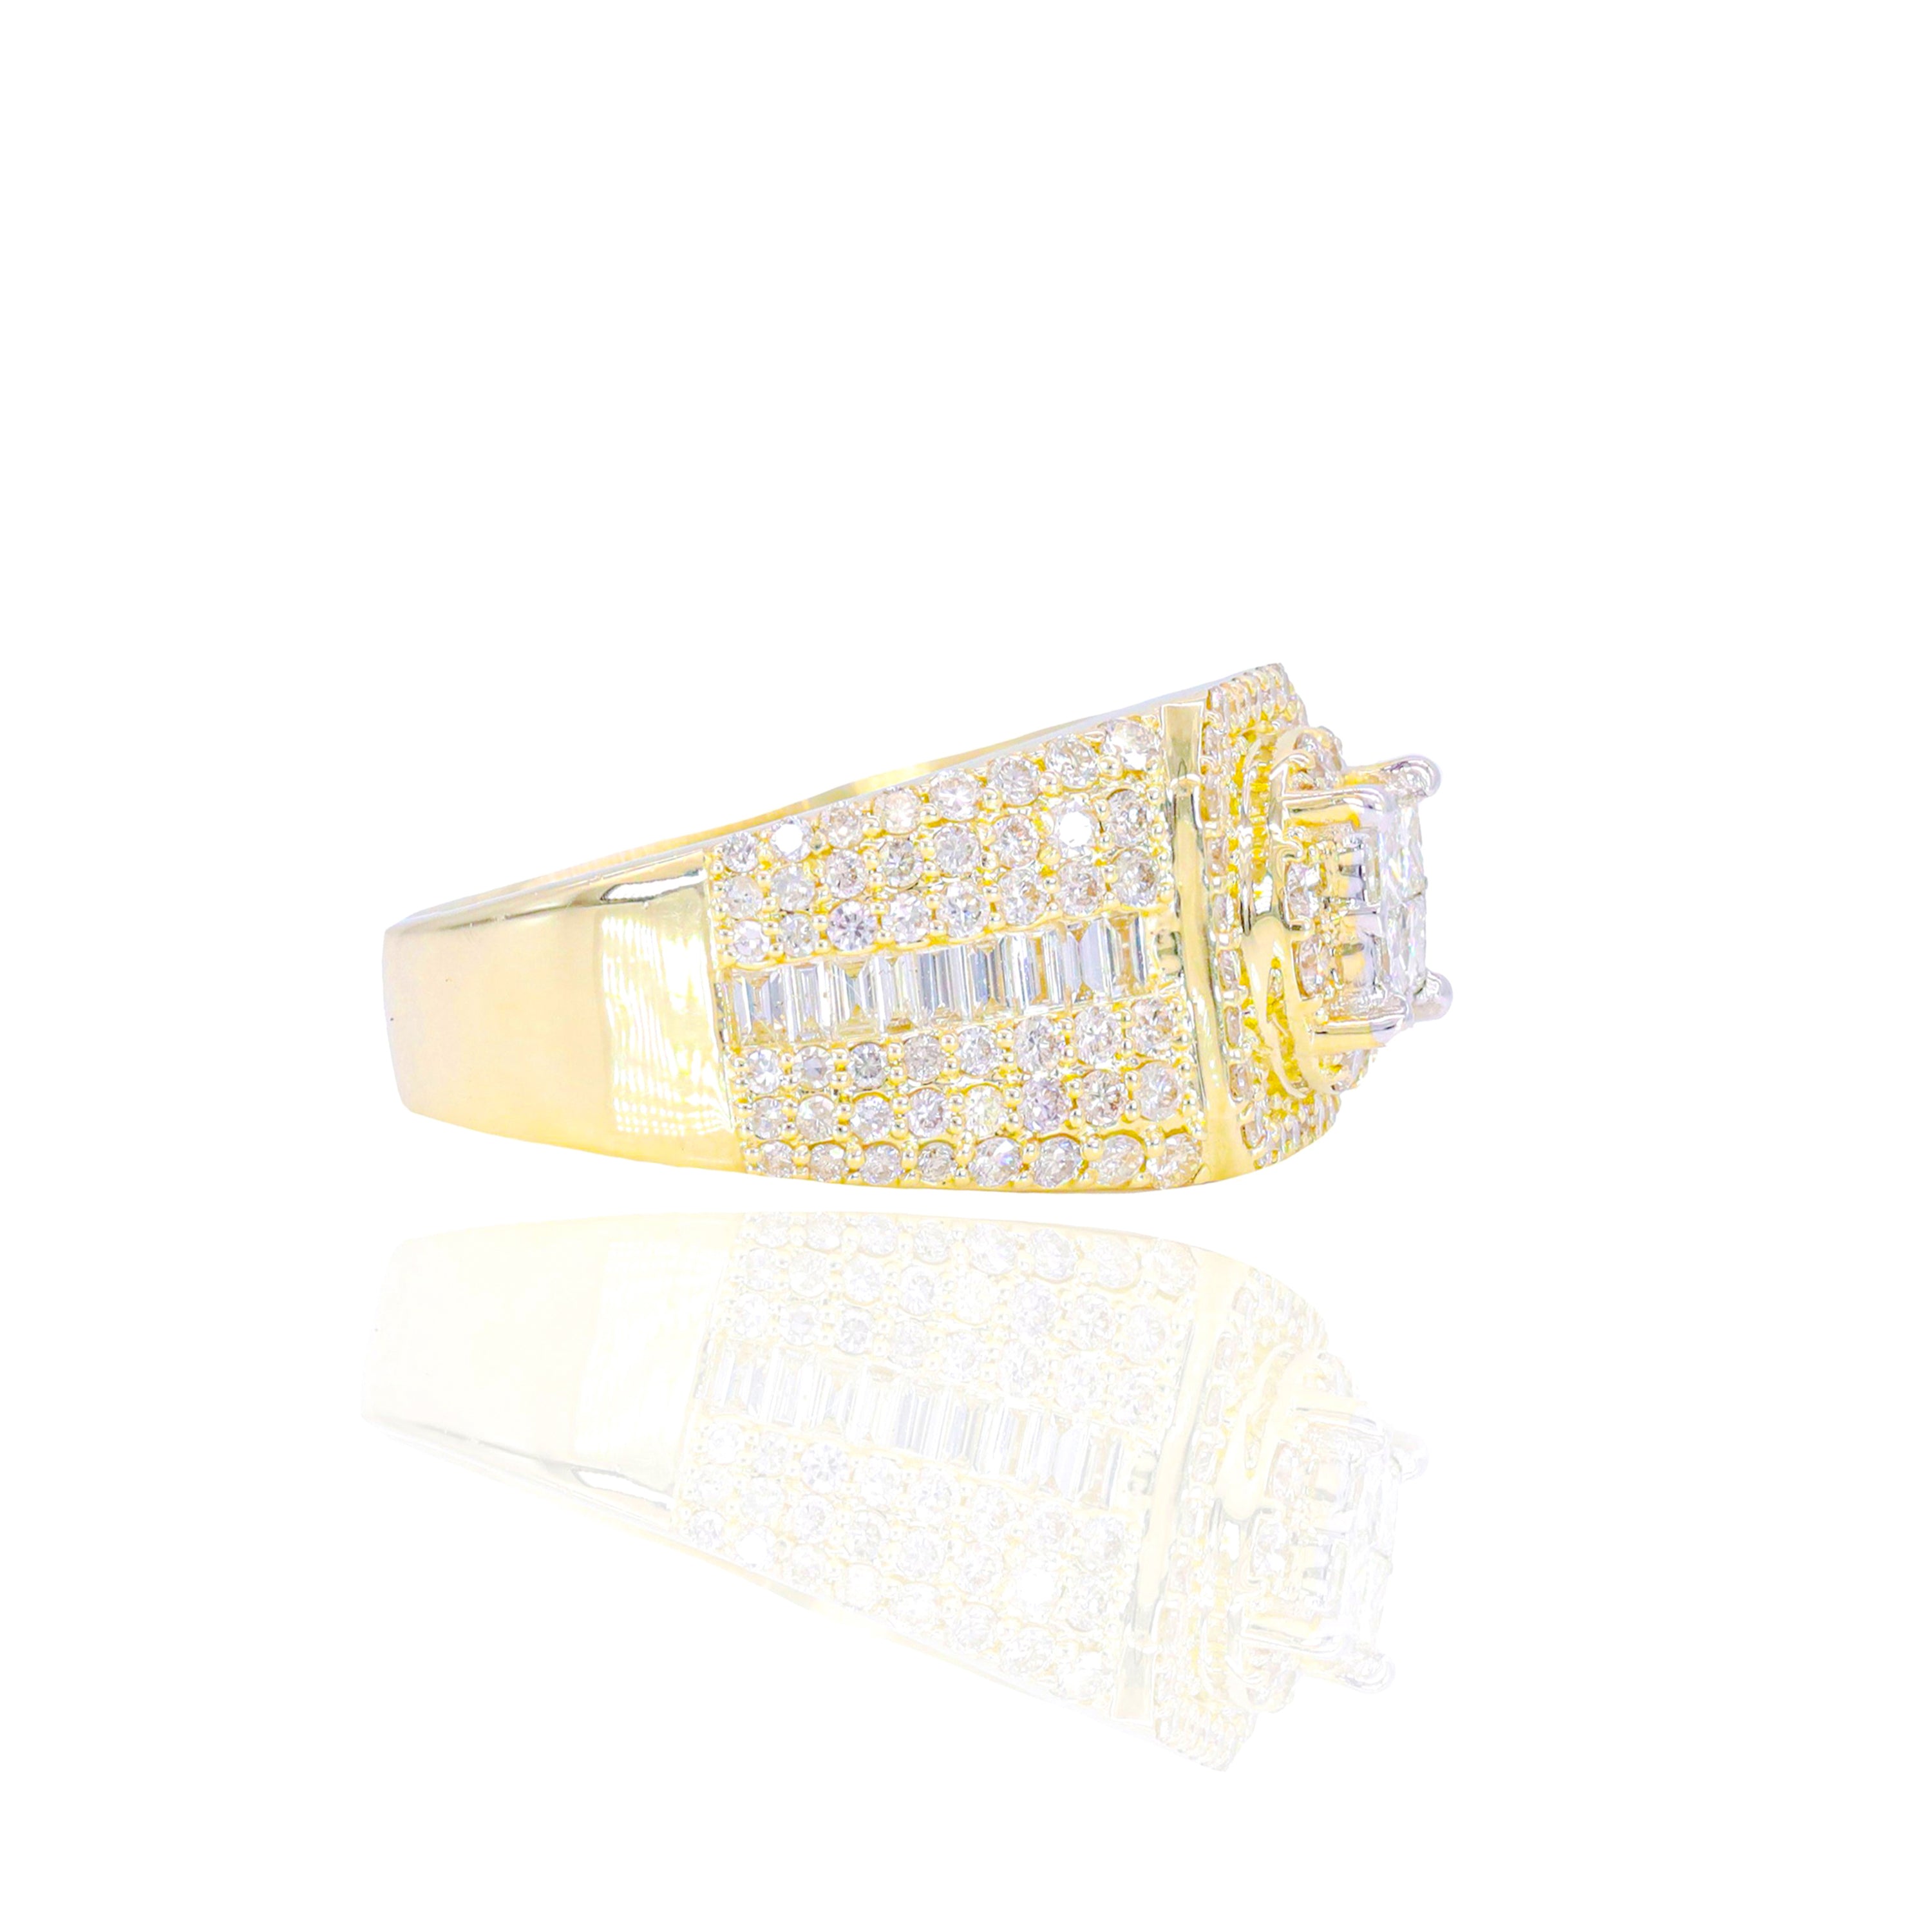 Princess Center Diamond Ring